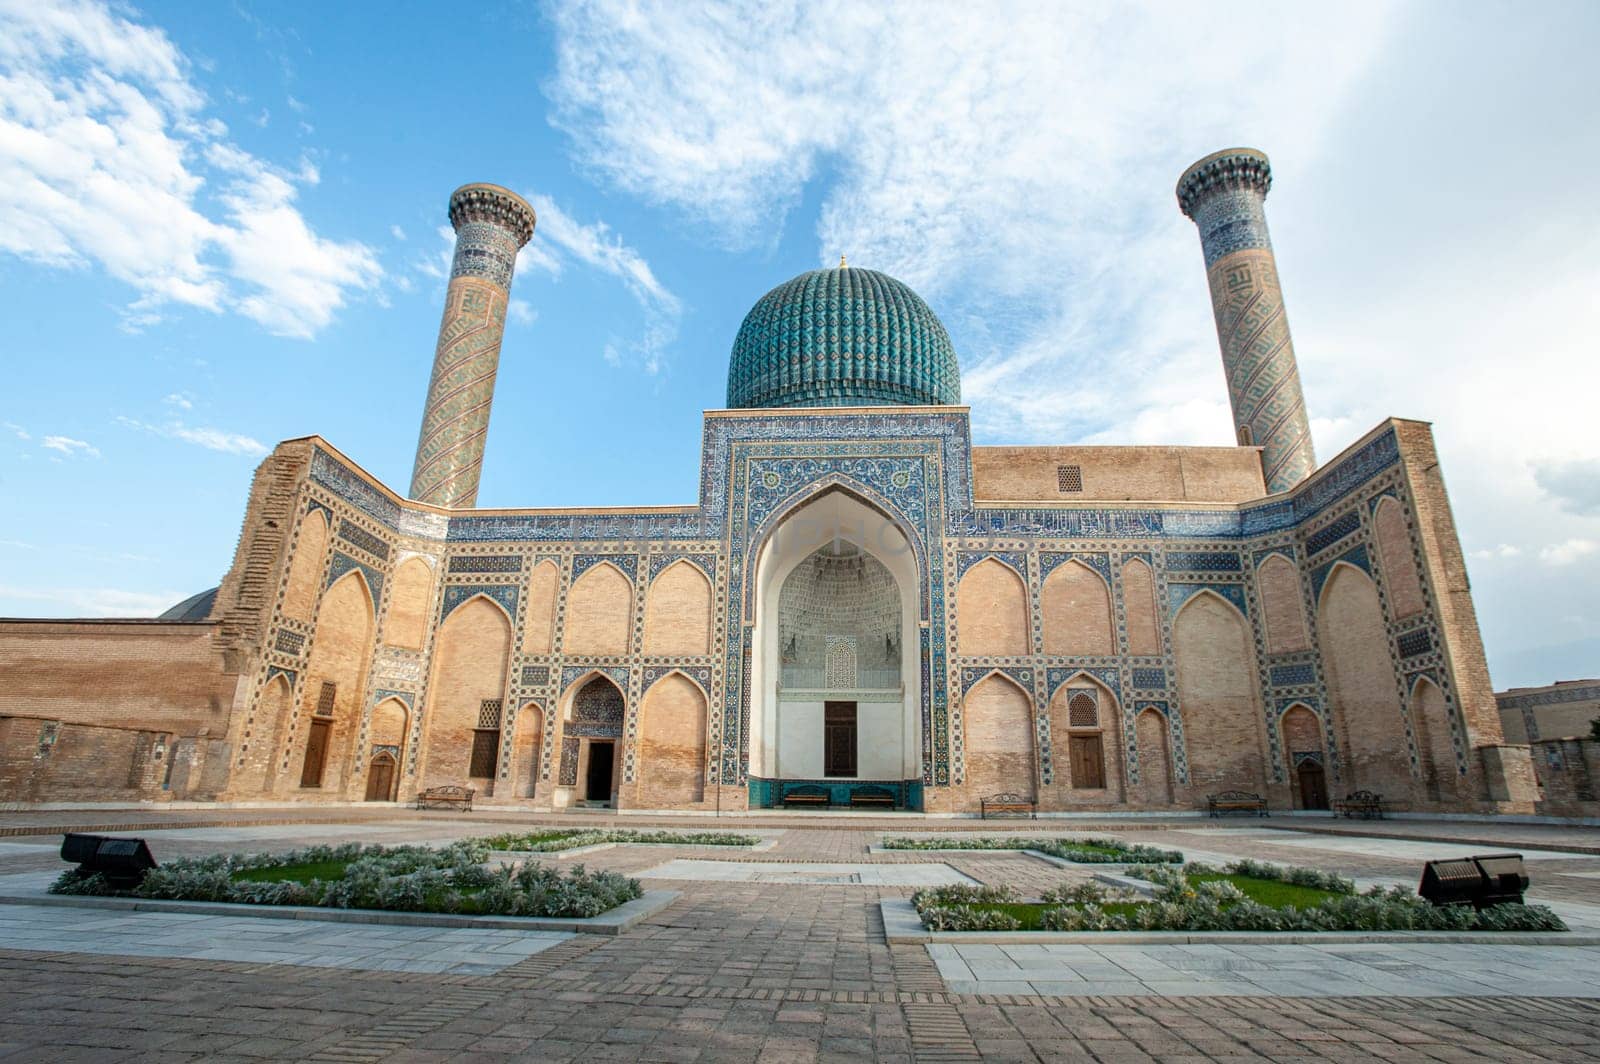 The mausoleum of Amir Timur in Samarkand, Uzbekistan